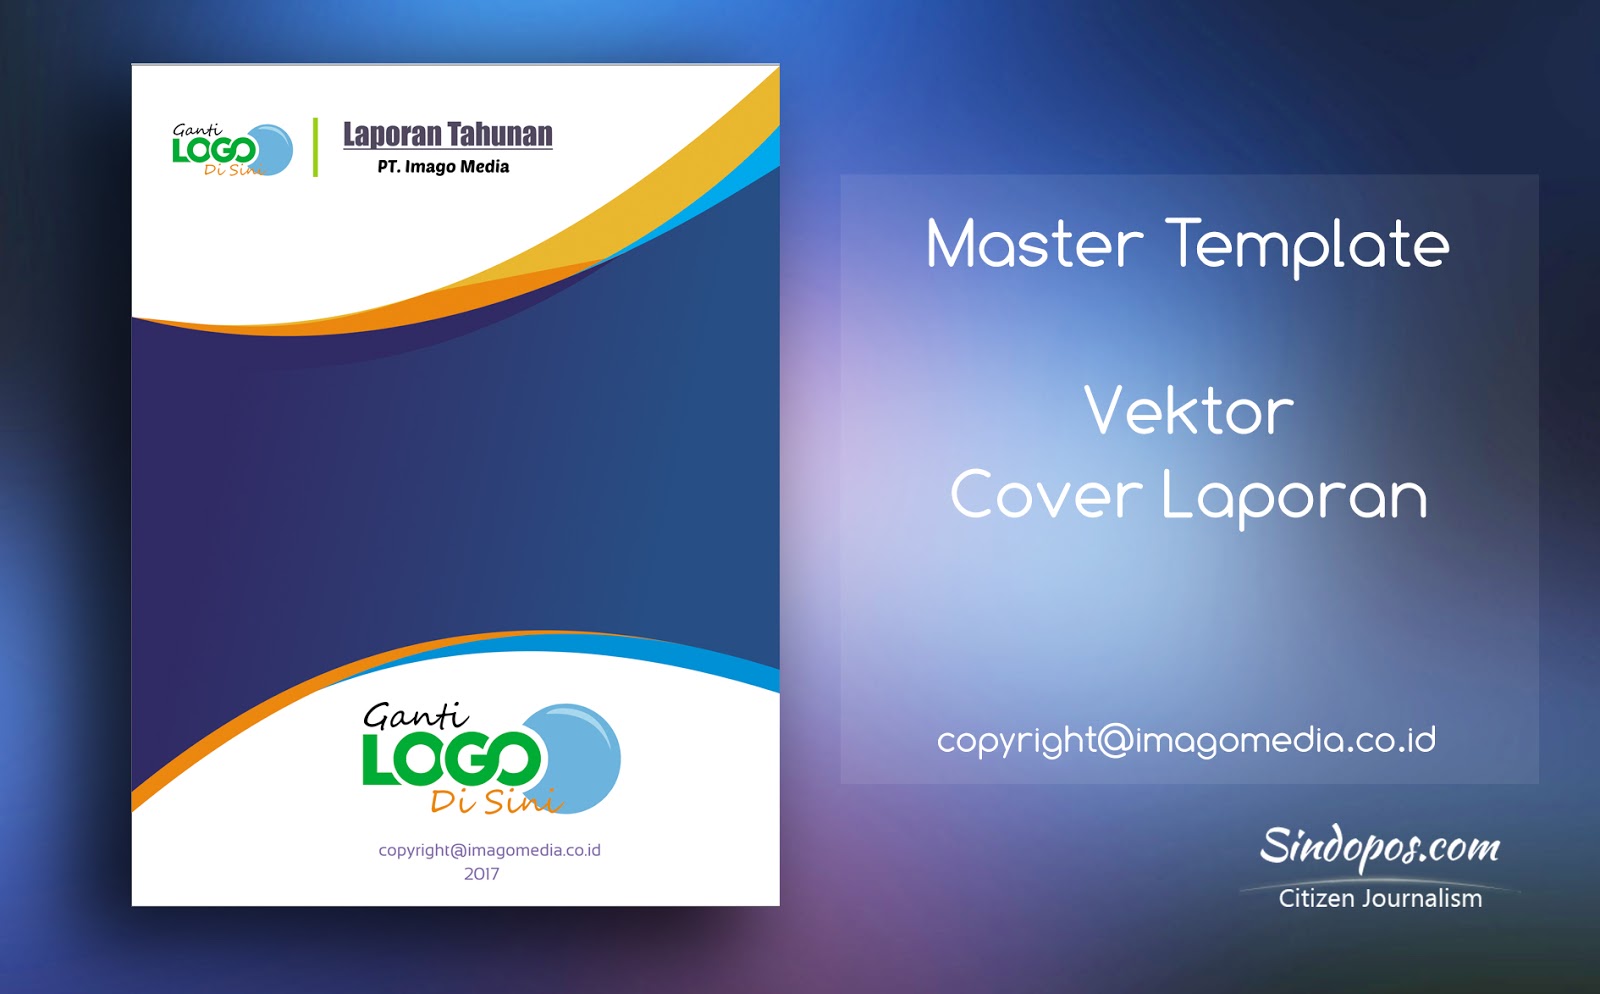 Download Template Desain Cover Laporan Keren  Imago Media